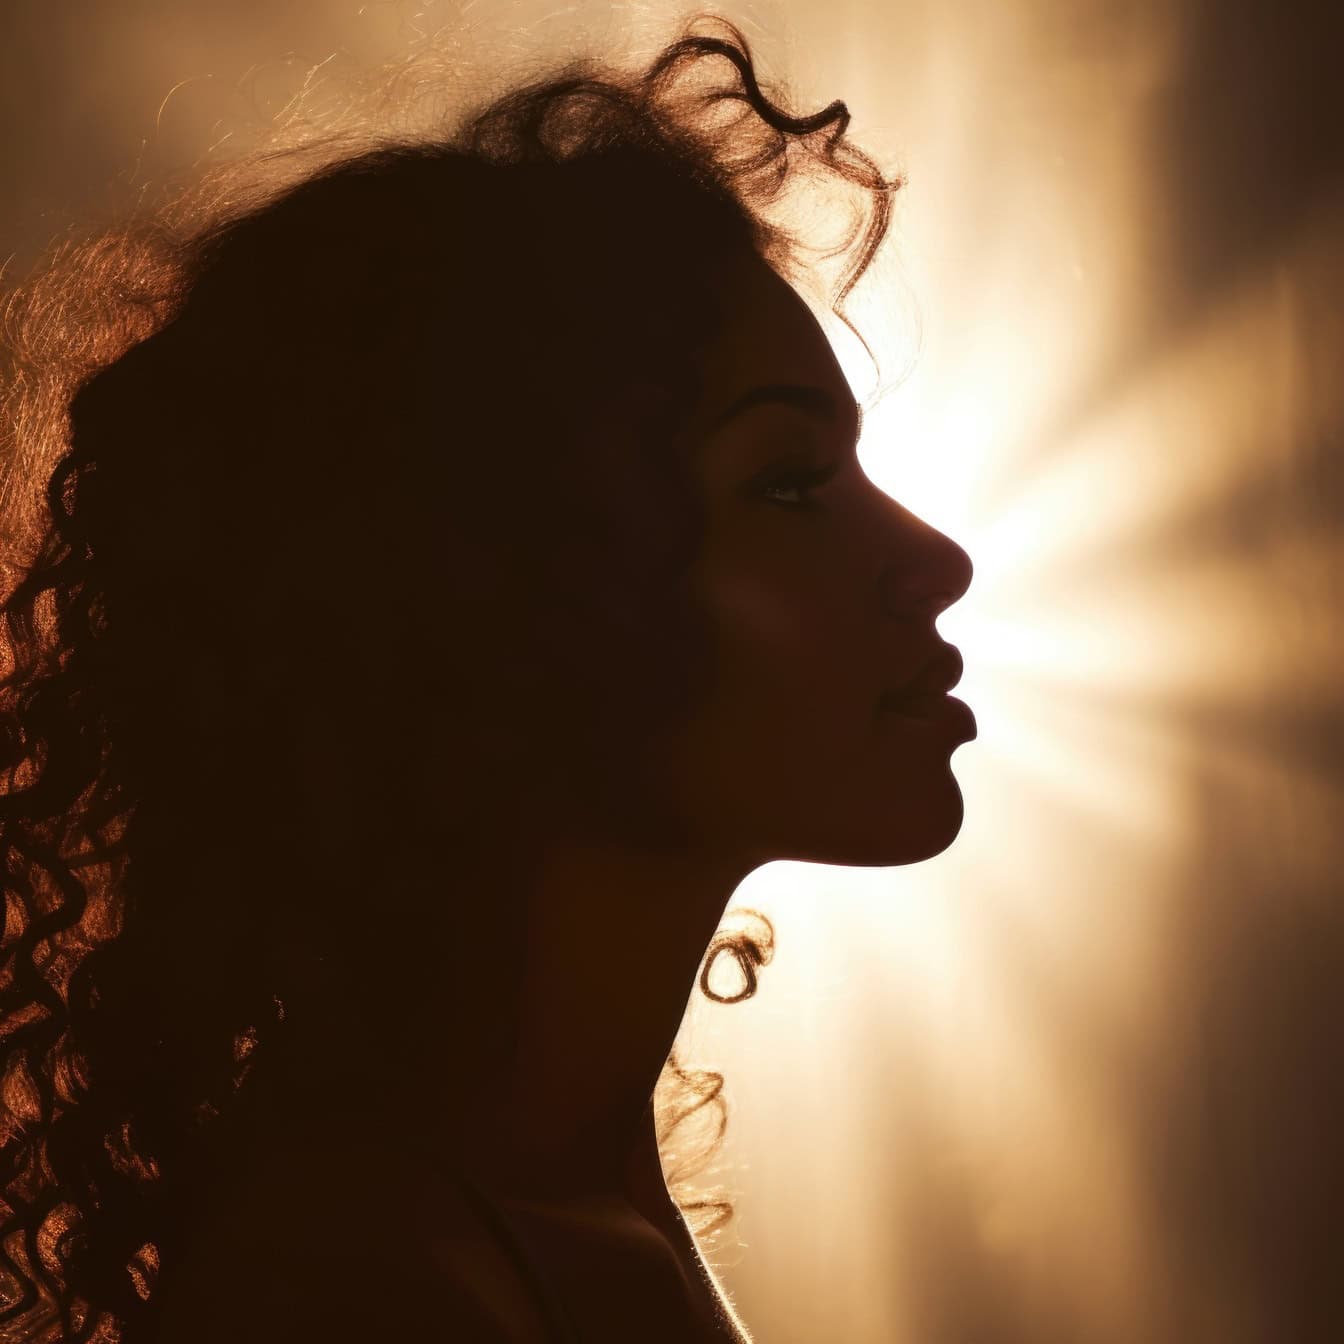 Profil siluety ženy se sluncem prosvítajícím skrz vlasy